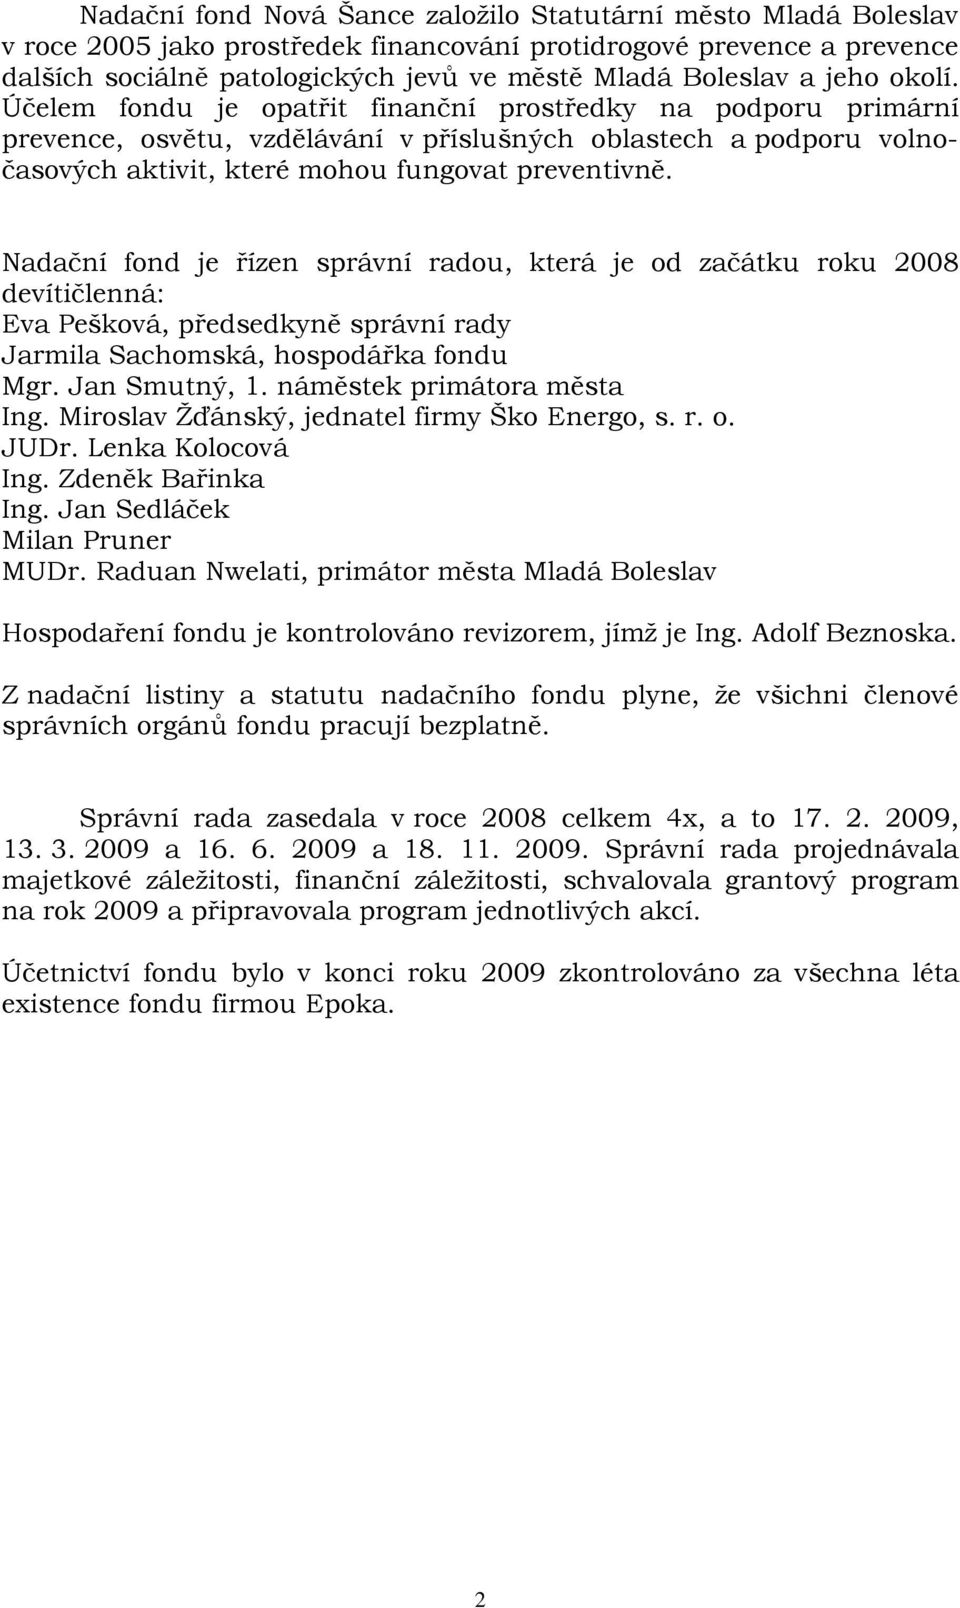 Nadační fond je řízen správní radou, která je od začátku roku 2008 devítičlenná: Eva Pešková, předsedkyně správní rady Jarmila Sachomská, hospodářka fondu Mgr. Jan Smutný, 1.